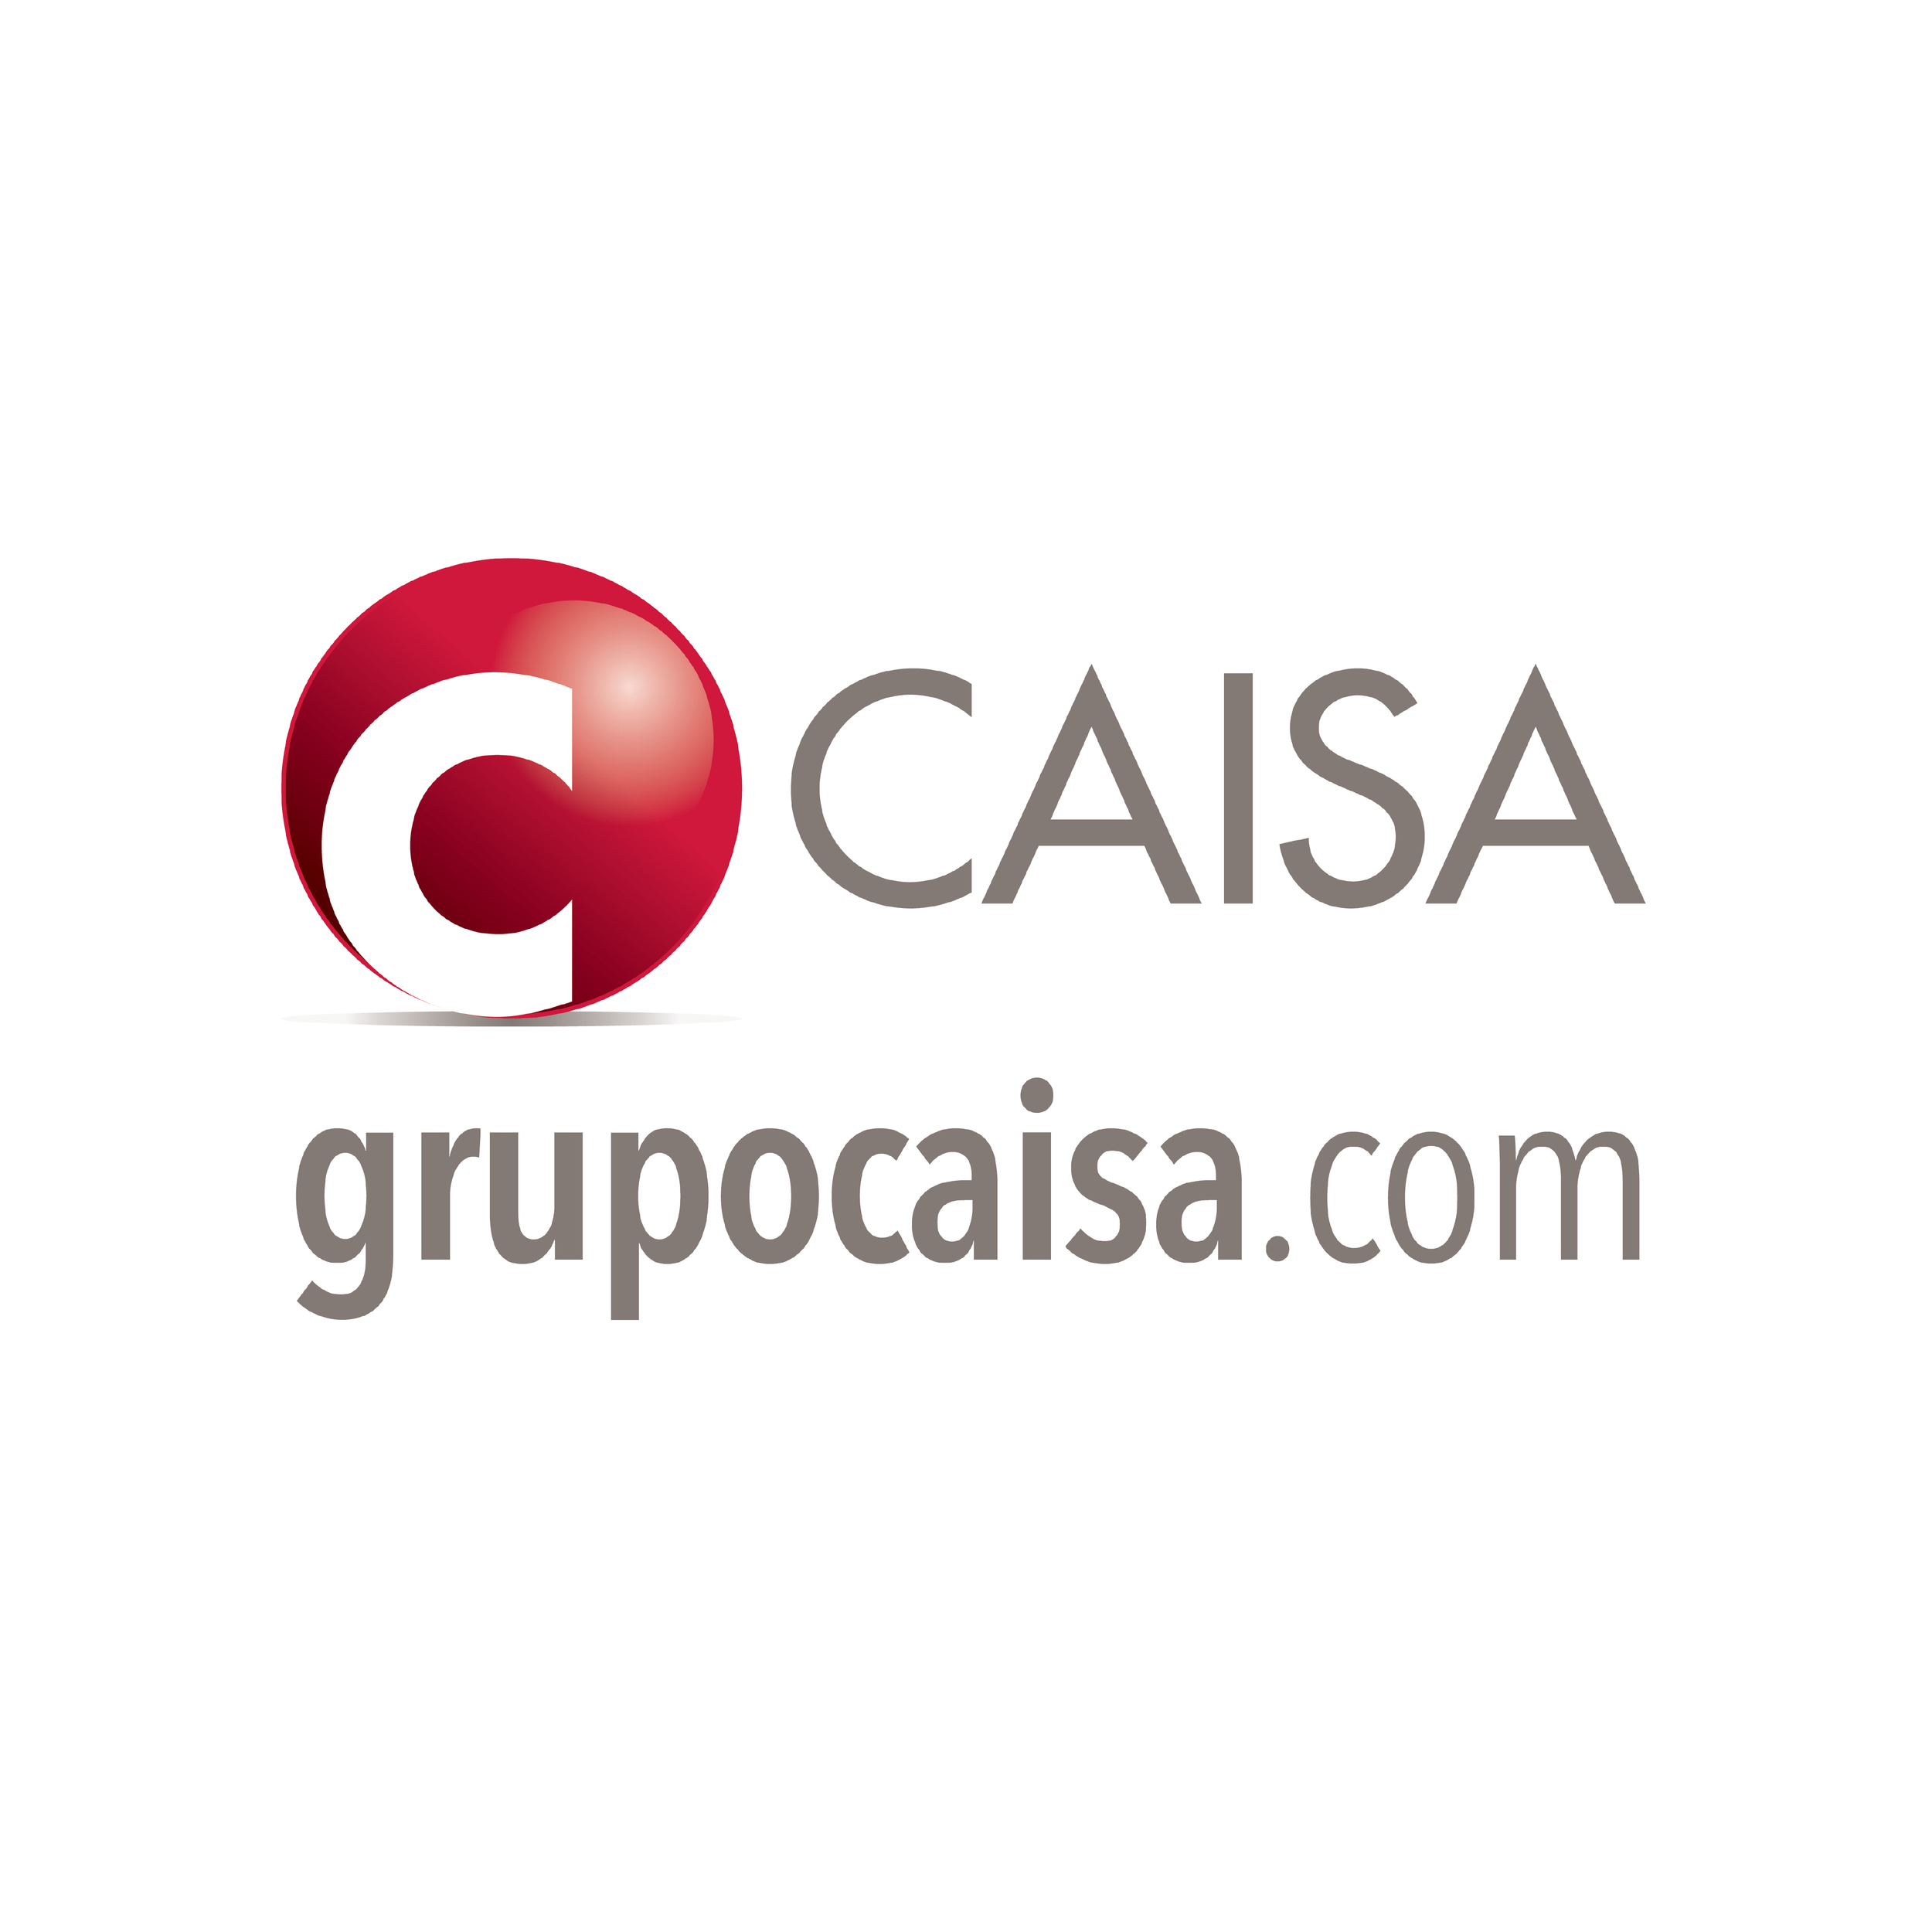 Logotipo CAISA para o site-01.png